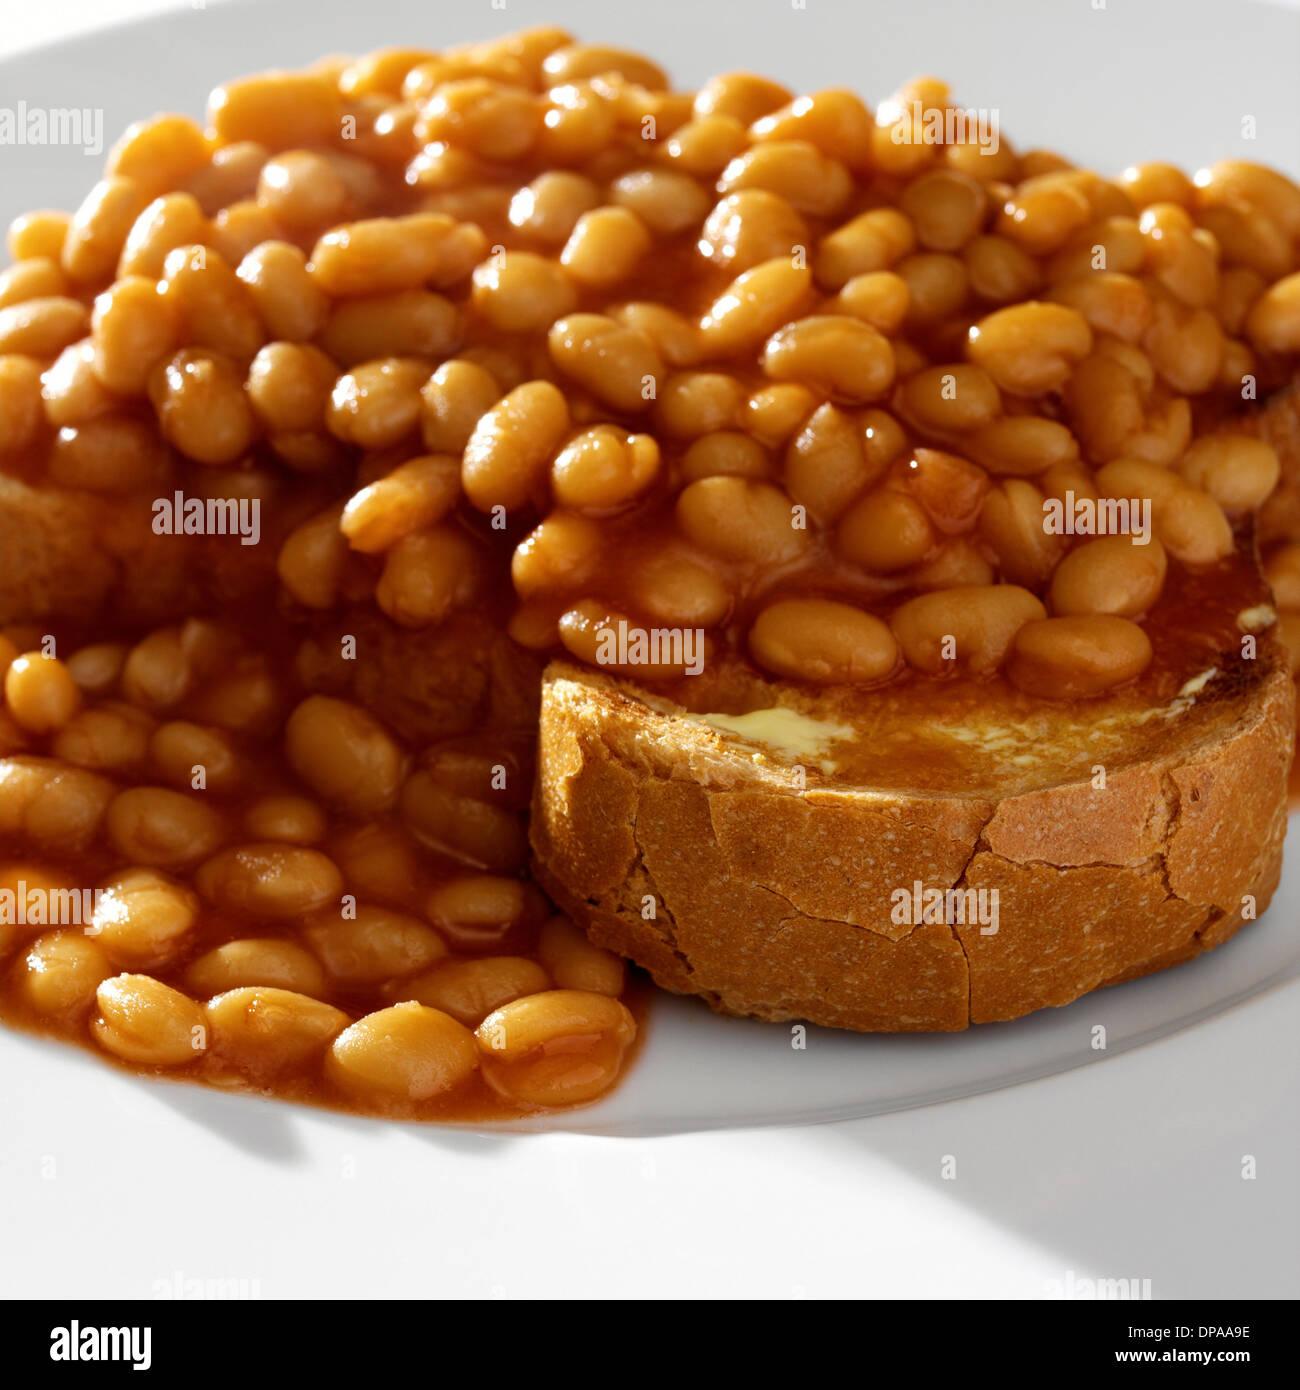 Beans on toast Stock Photo